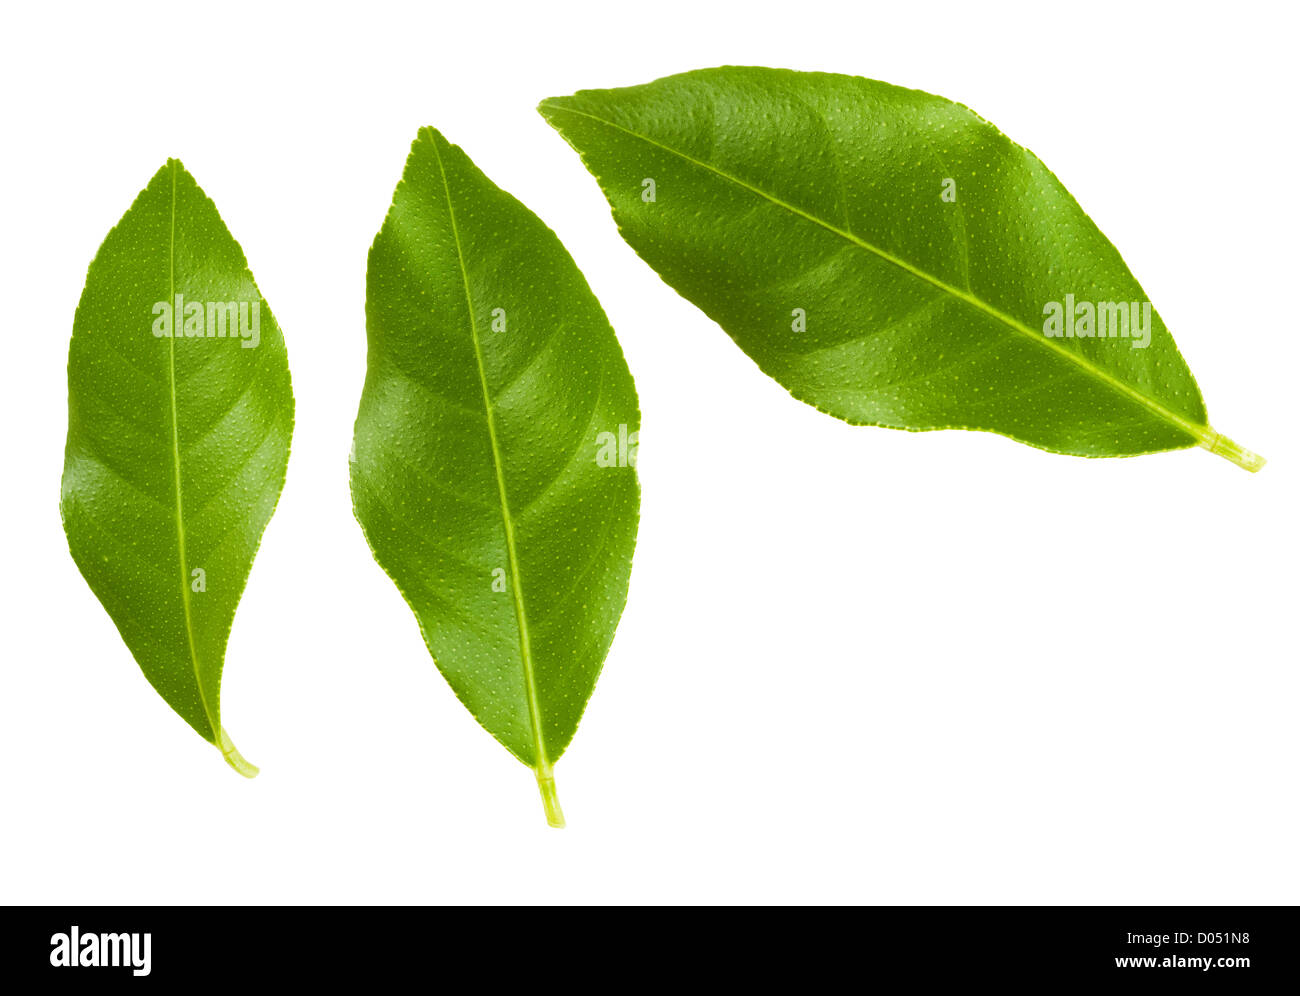 Conjunto de hojas de los árboles de limón verde aislado sobre fondo blanco. Foto de stock